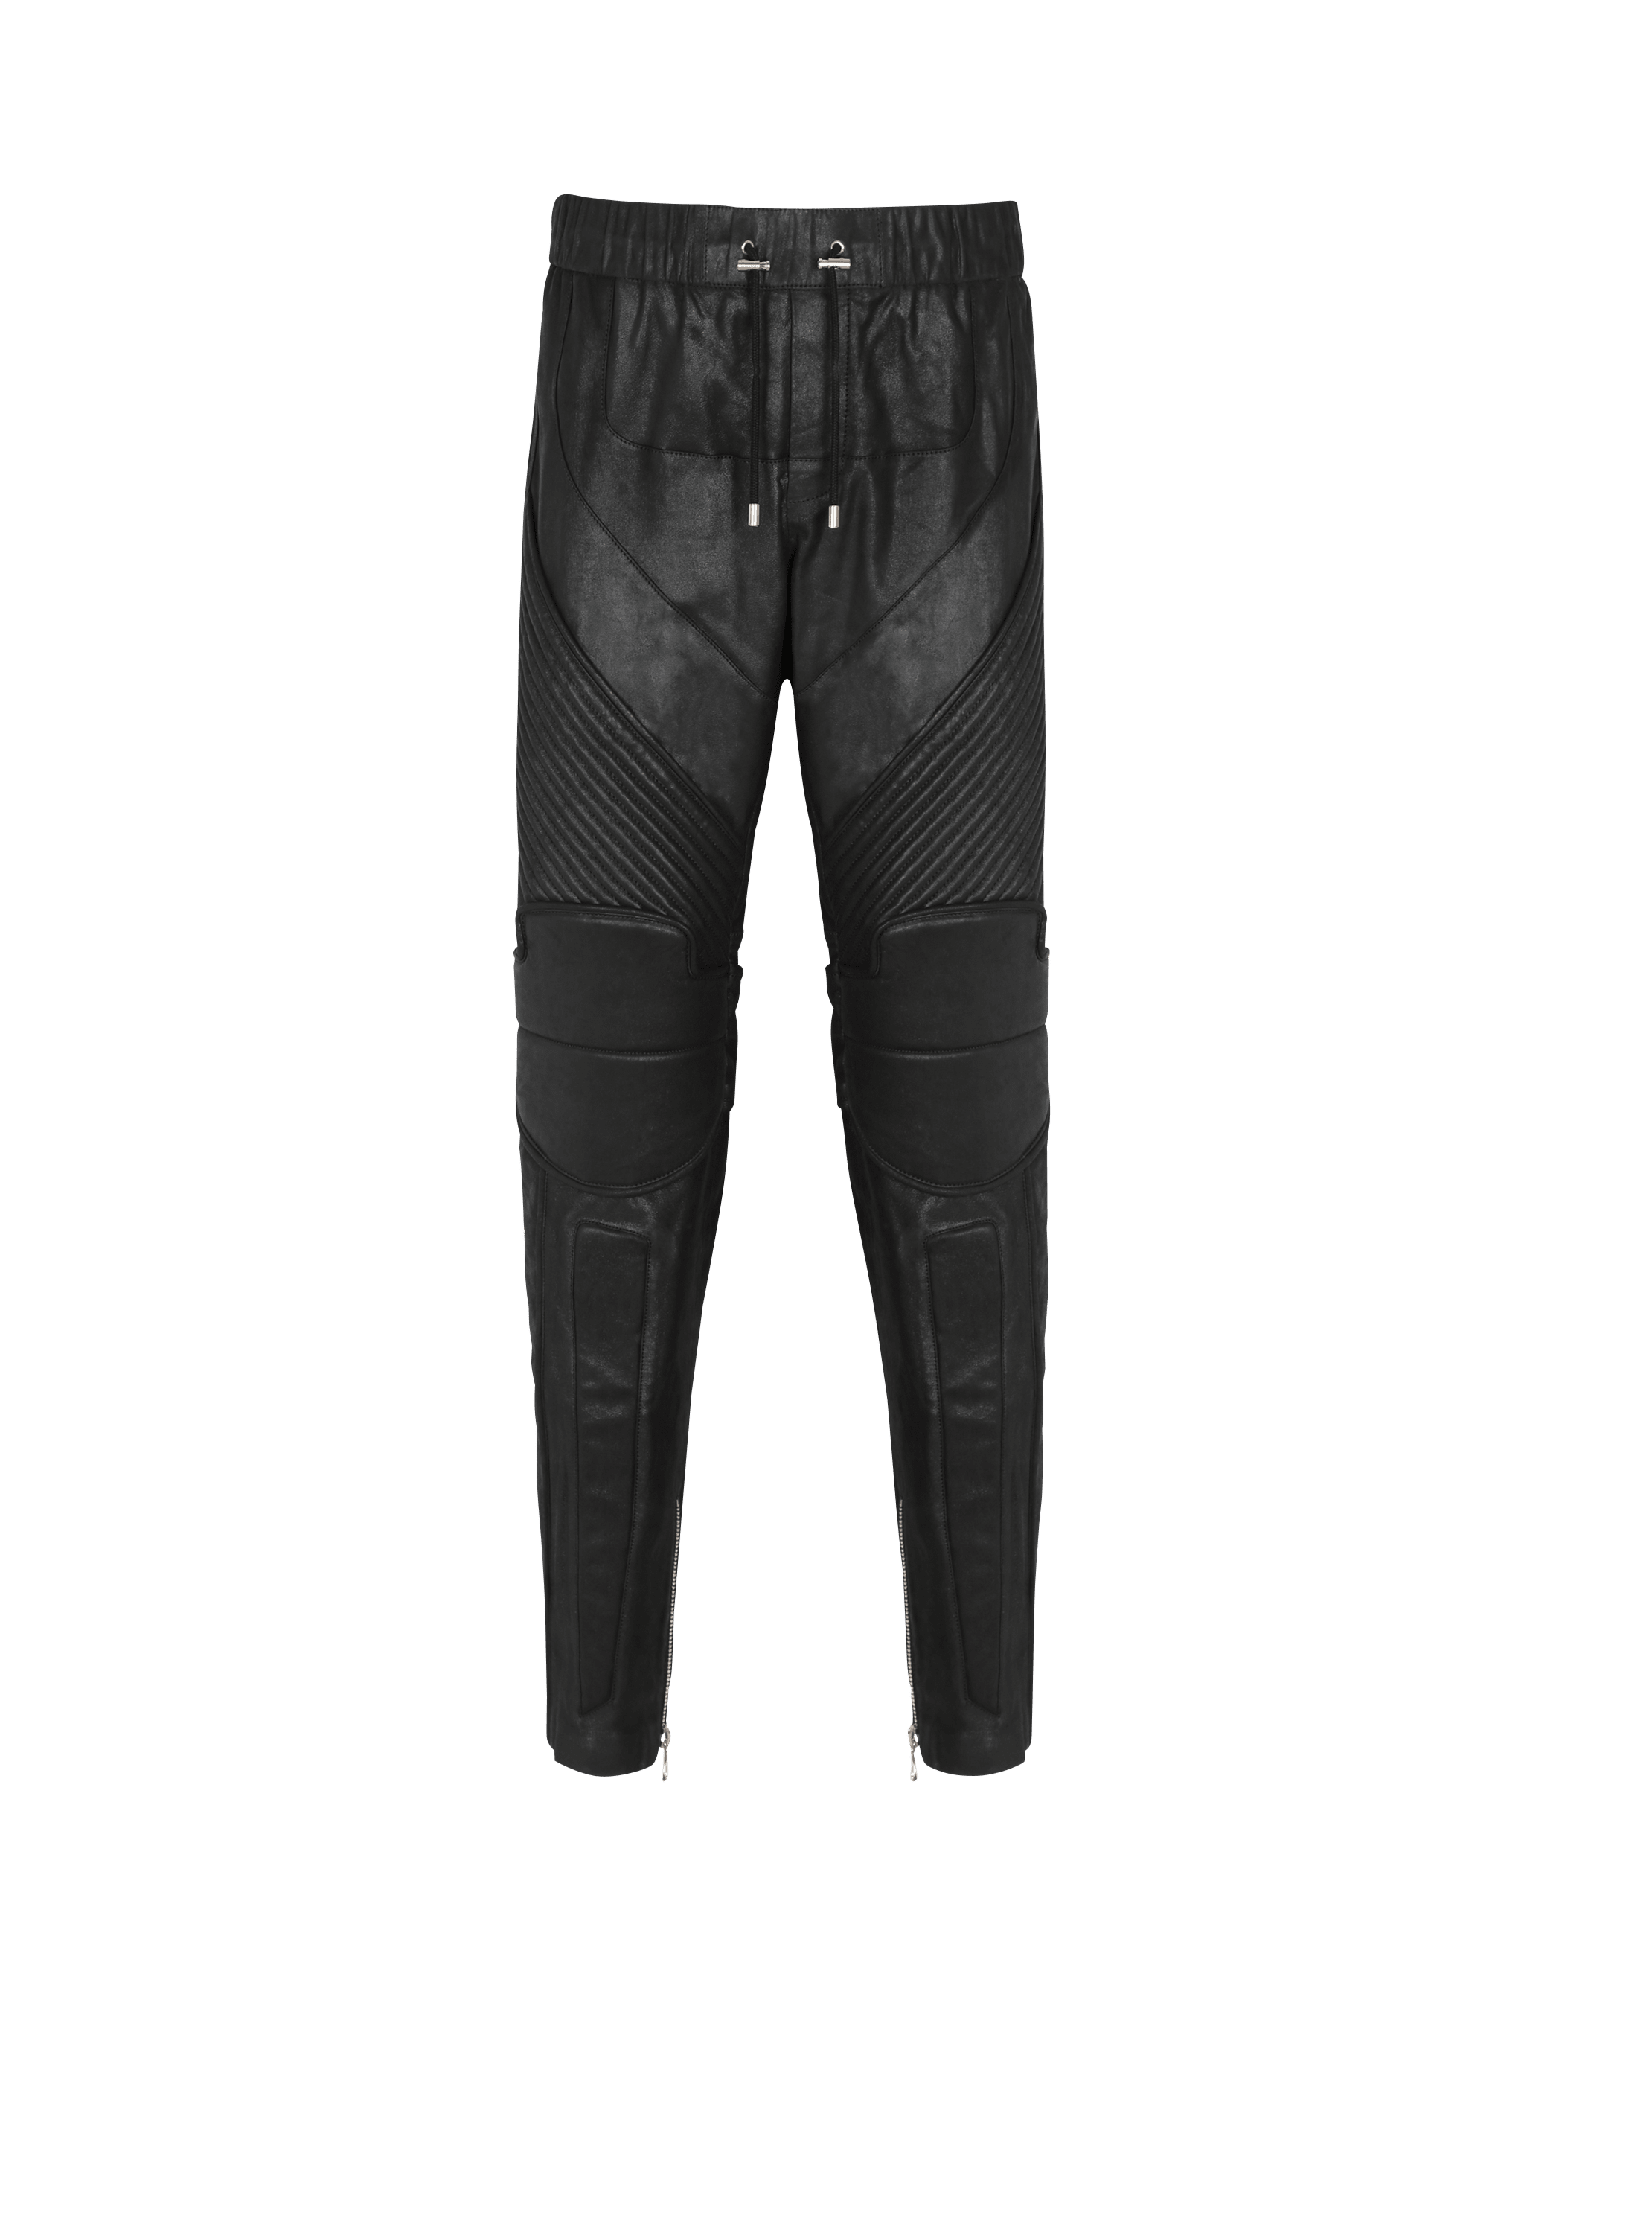 Leather jogging bottoms, black, hi-res